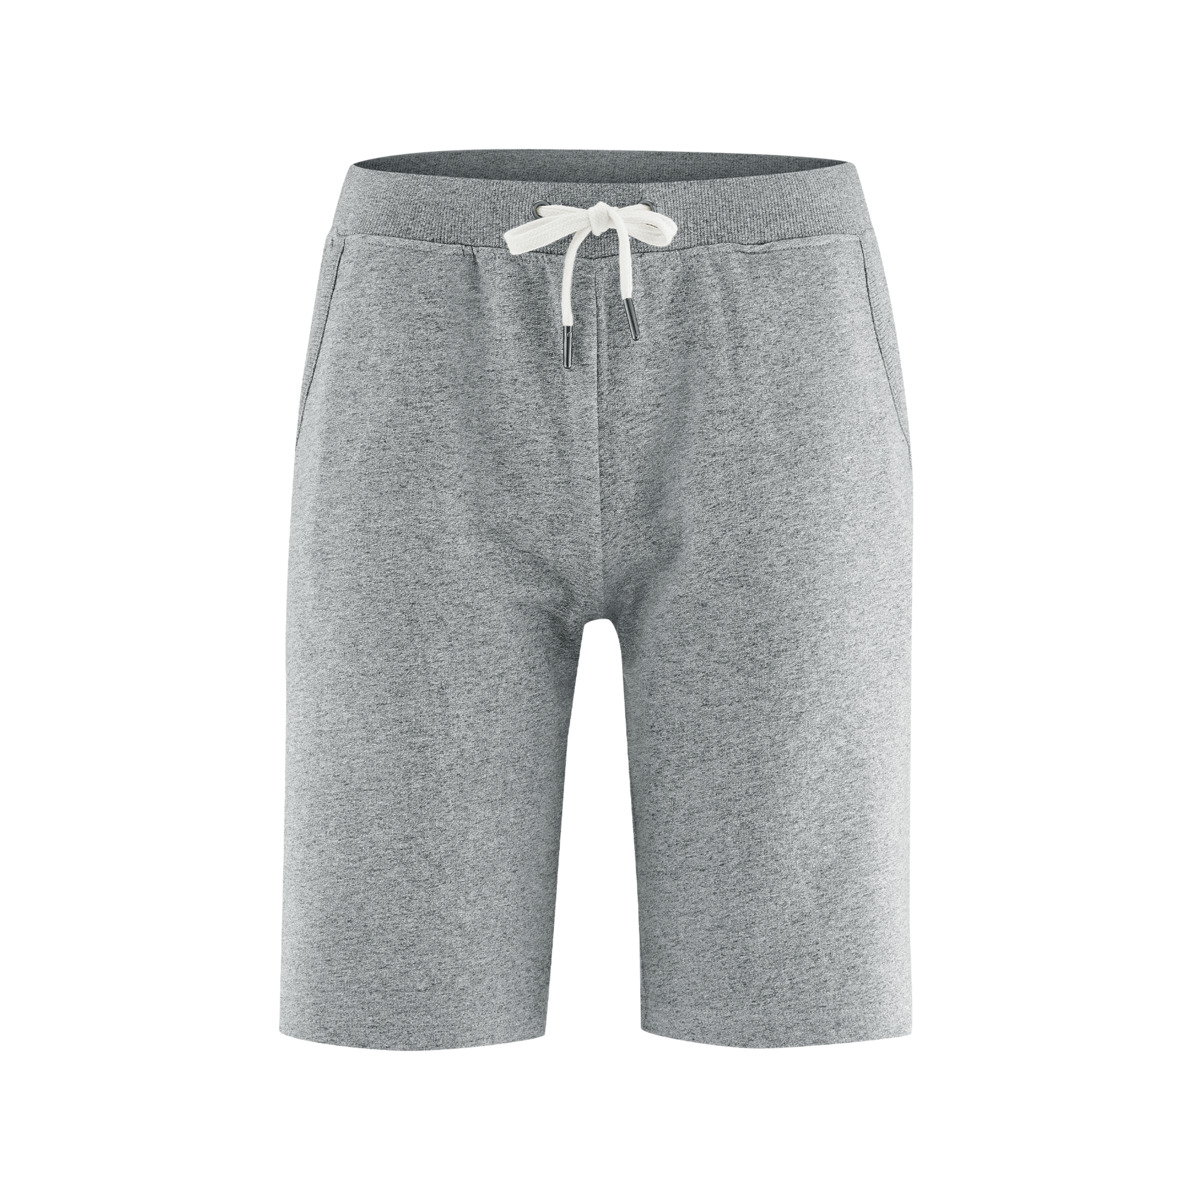 Grey Shorts, INA